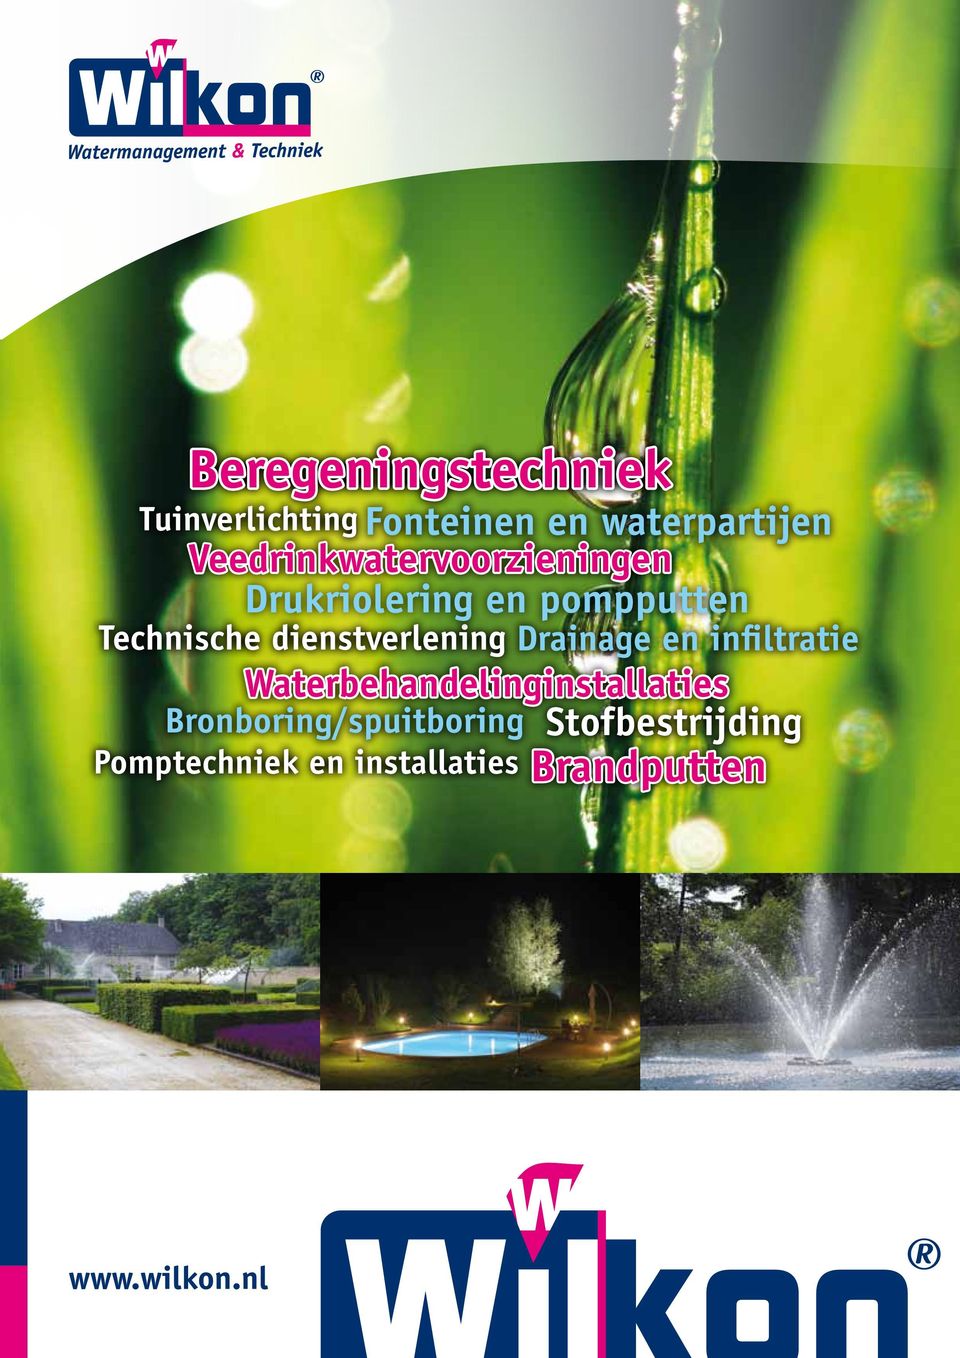 Tuinverlichting Technische dienstverlening Drainage en infiltratie